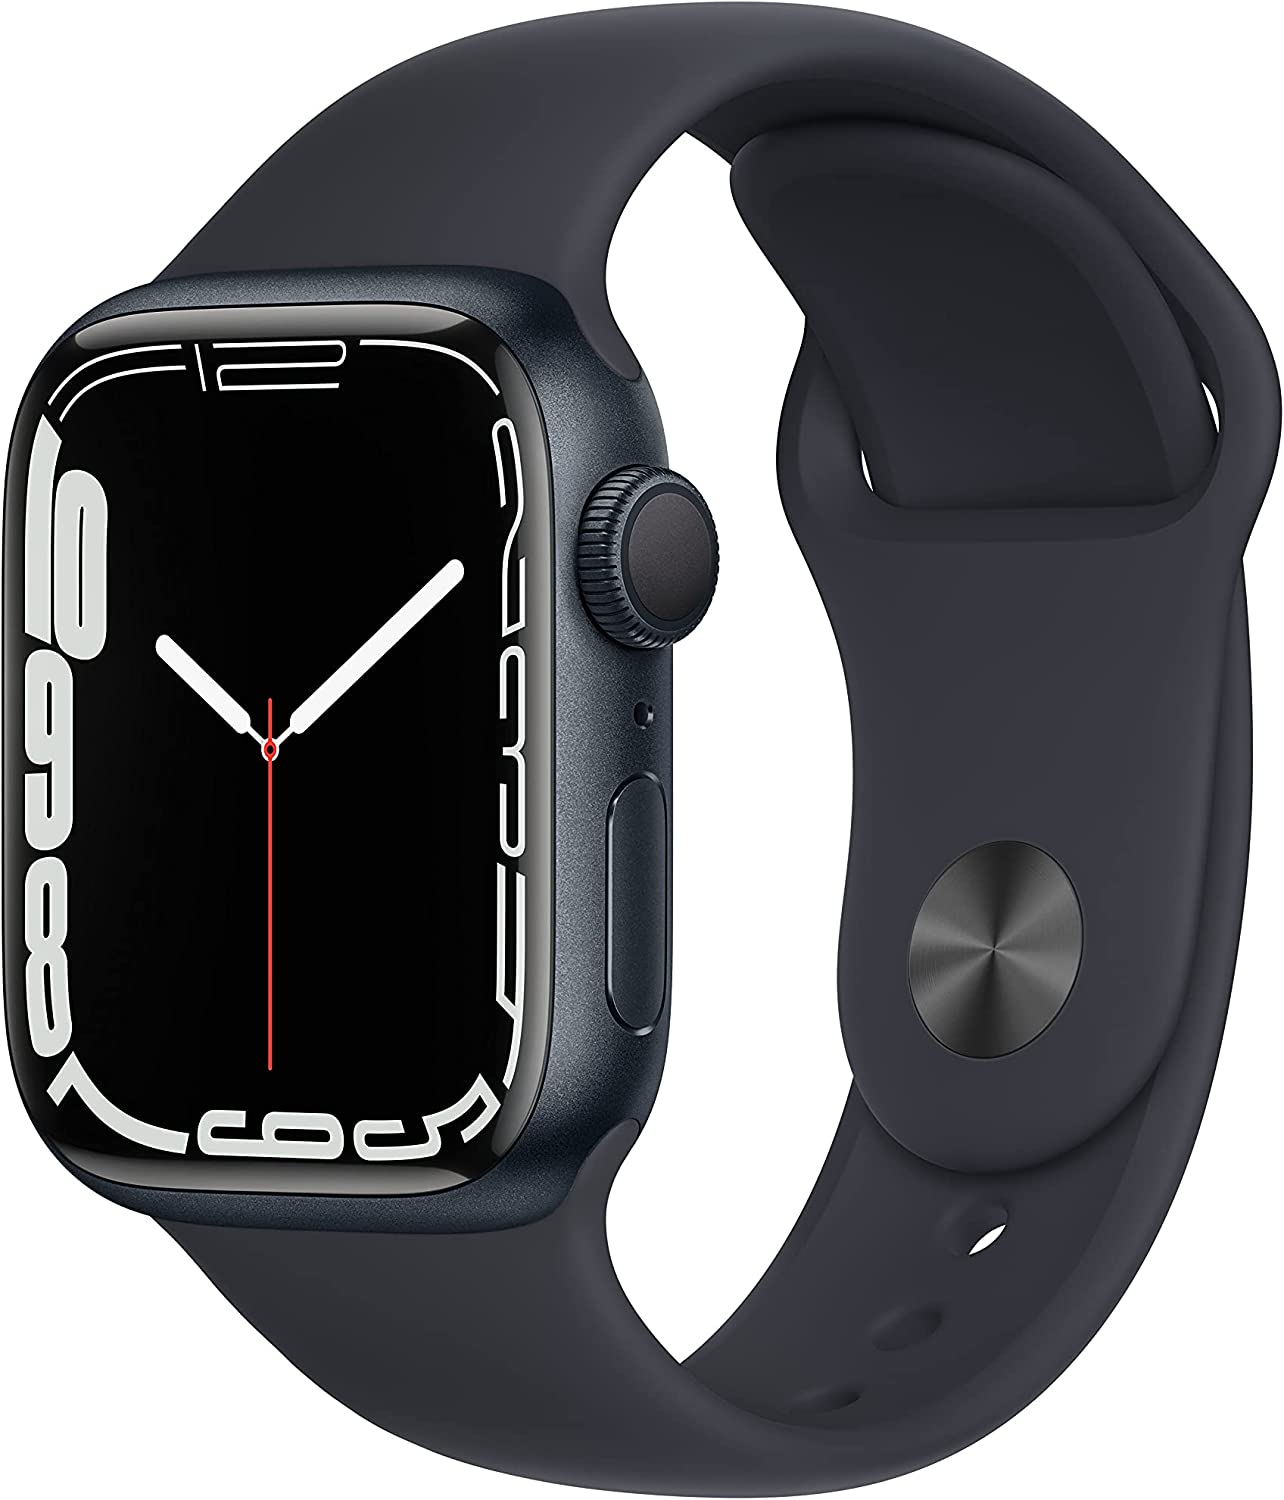 Apple Watch 7 vs 6